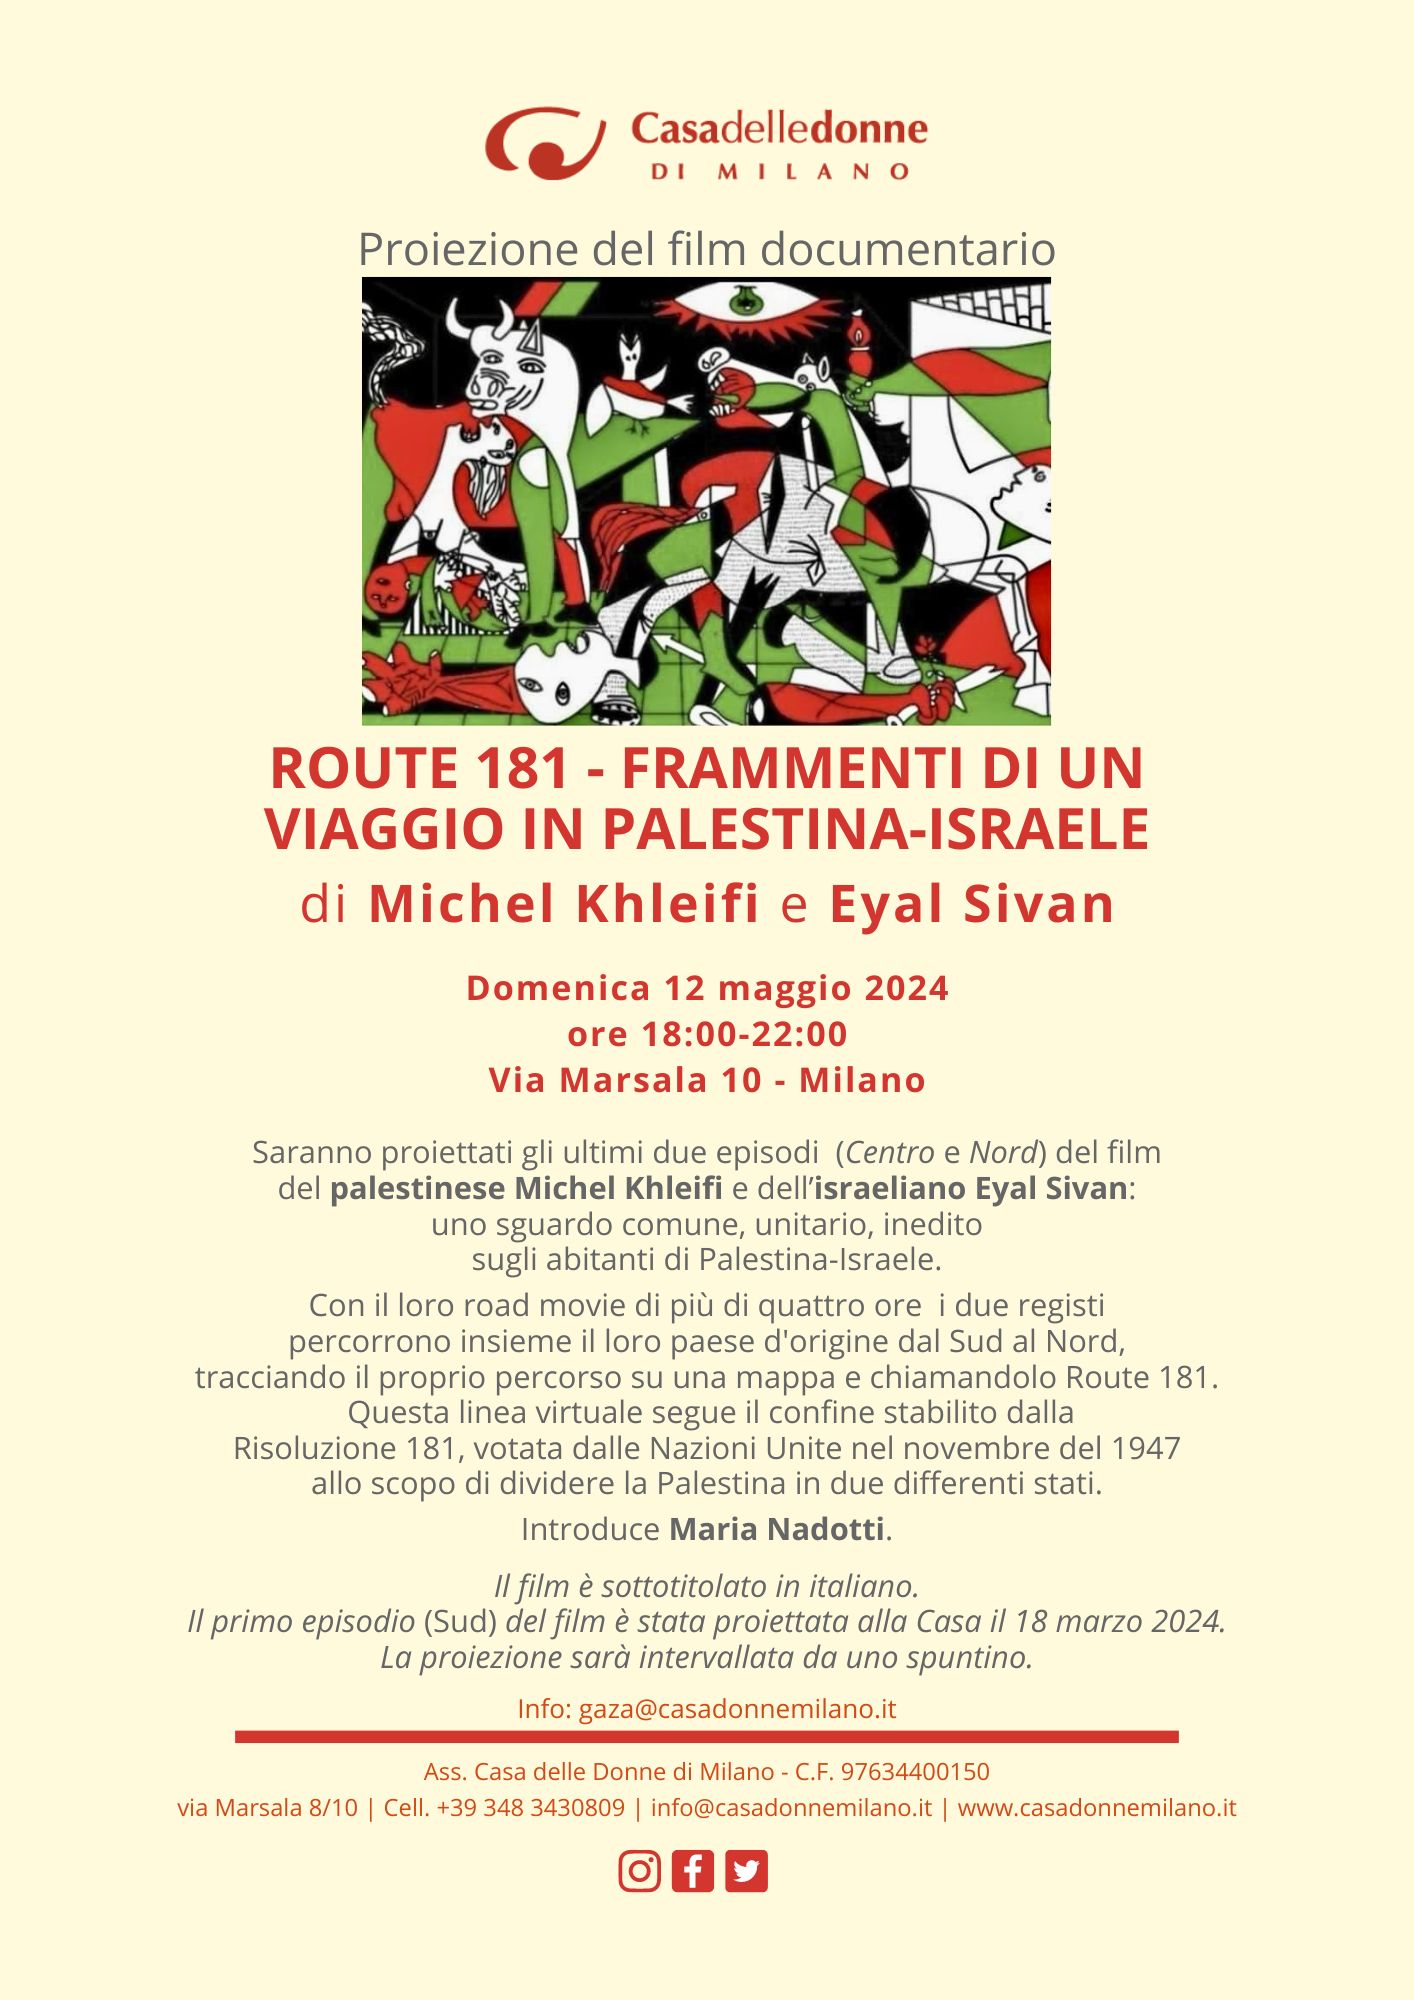 Proiezione del film documentario "Route 181 - Frammenti di un viaggio in Palestina-Israele" @ Casa delle Donne di Milano